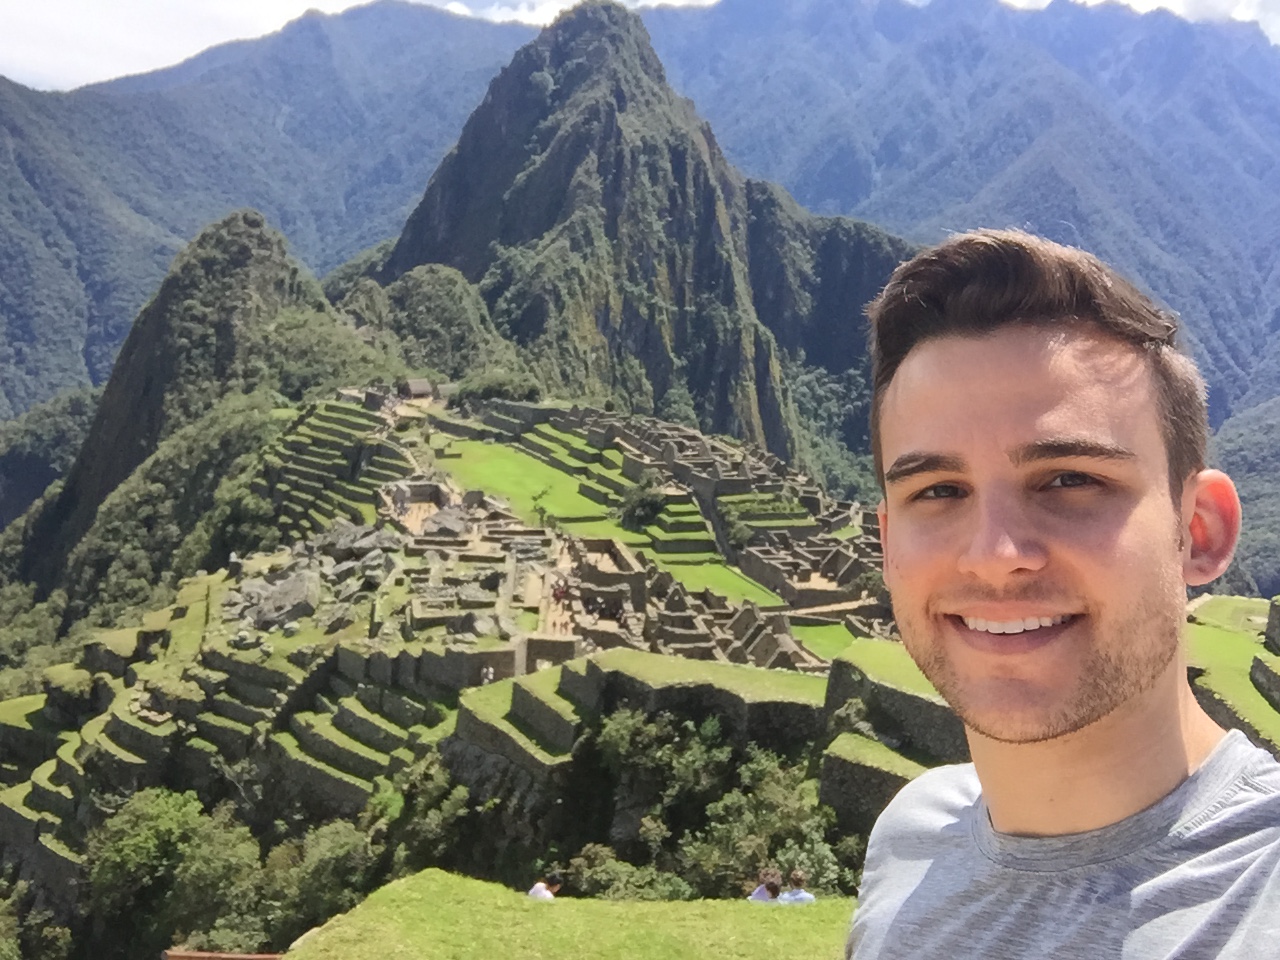 Emiliano Valle visits Machu Picchu, a 15th-century Inca citadel located in southern Peru.